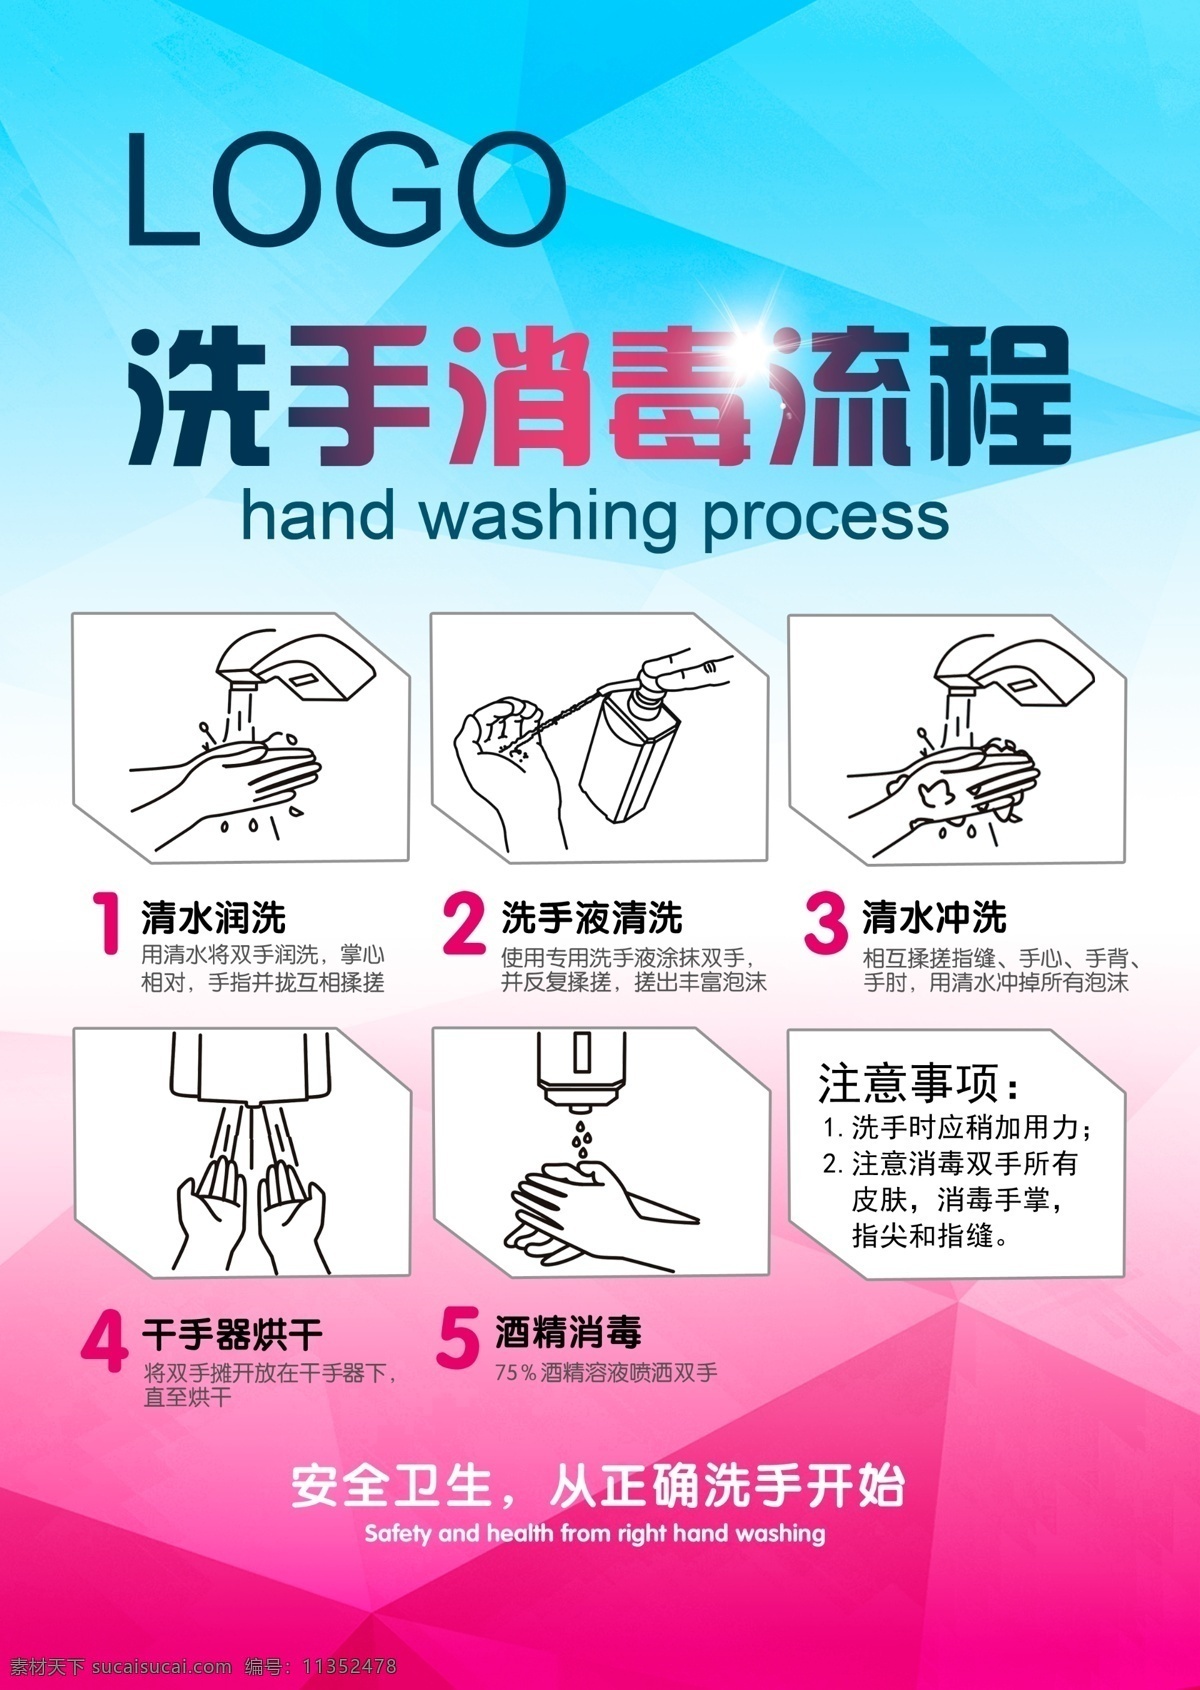 洗手消毒流程 洗手 消毒 简笔画 几何 渐变底色 流程图